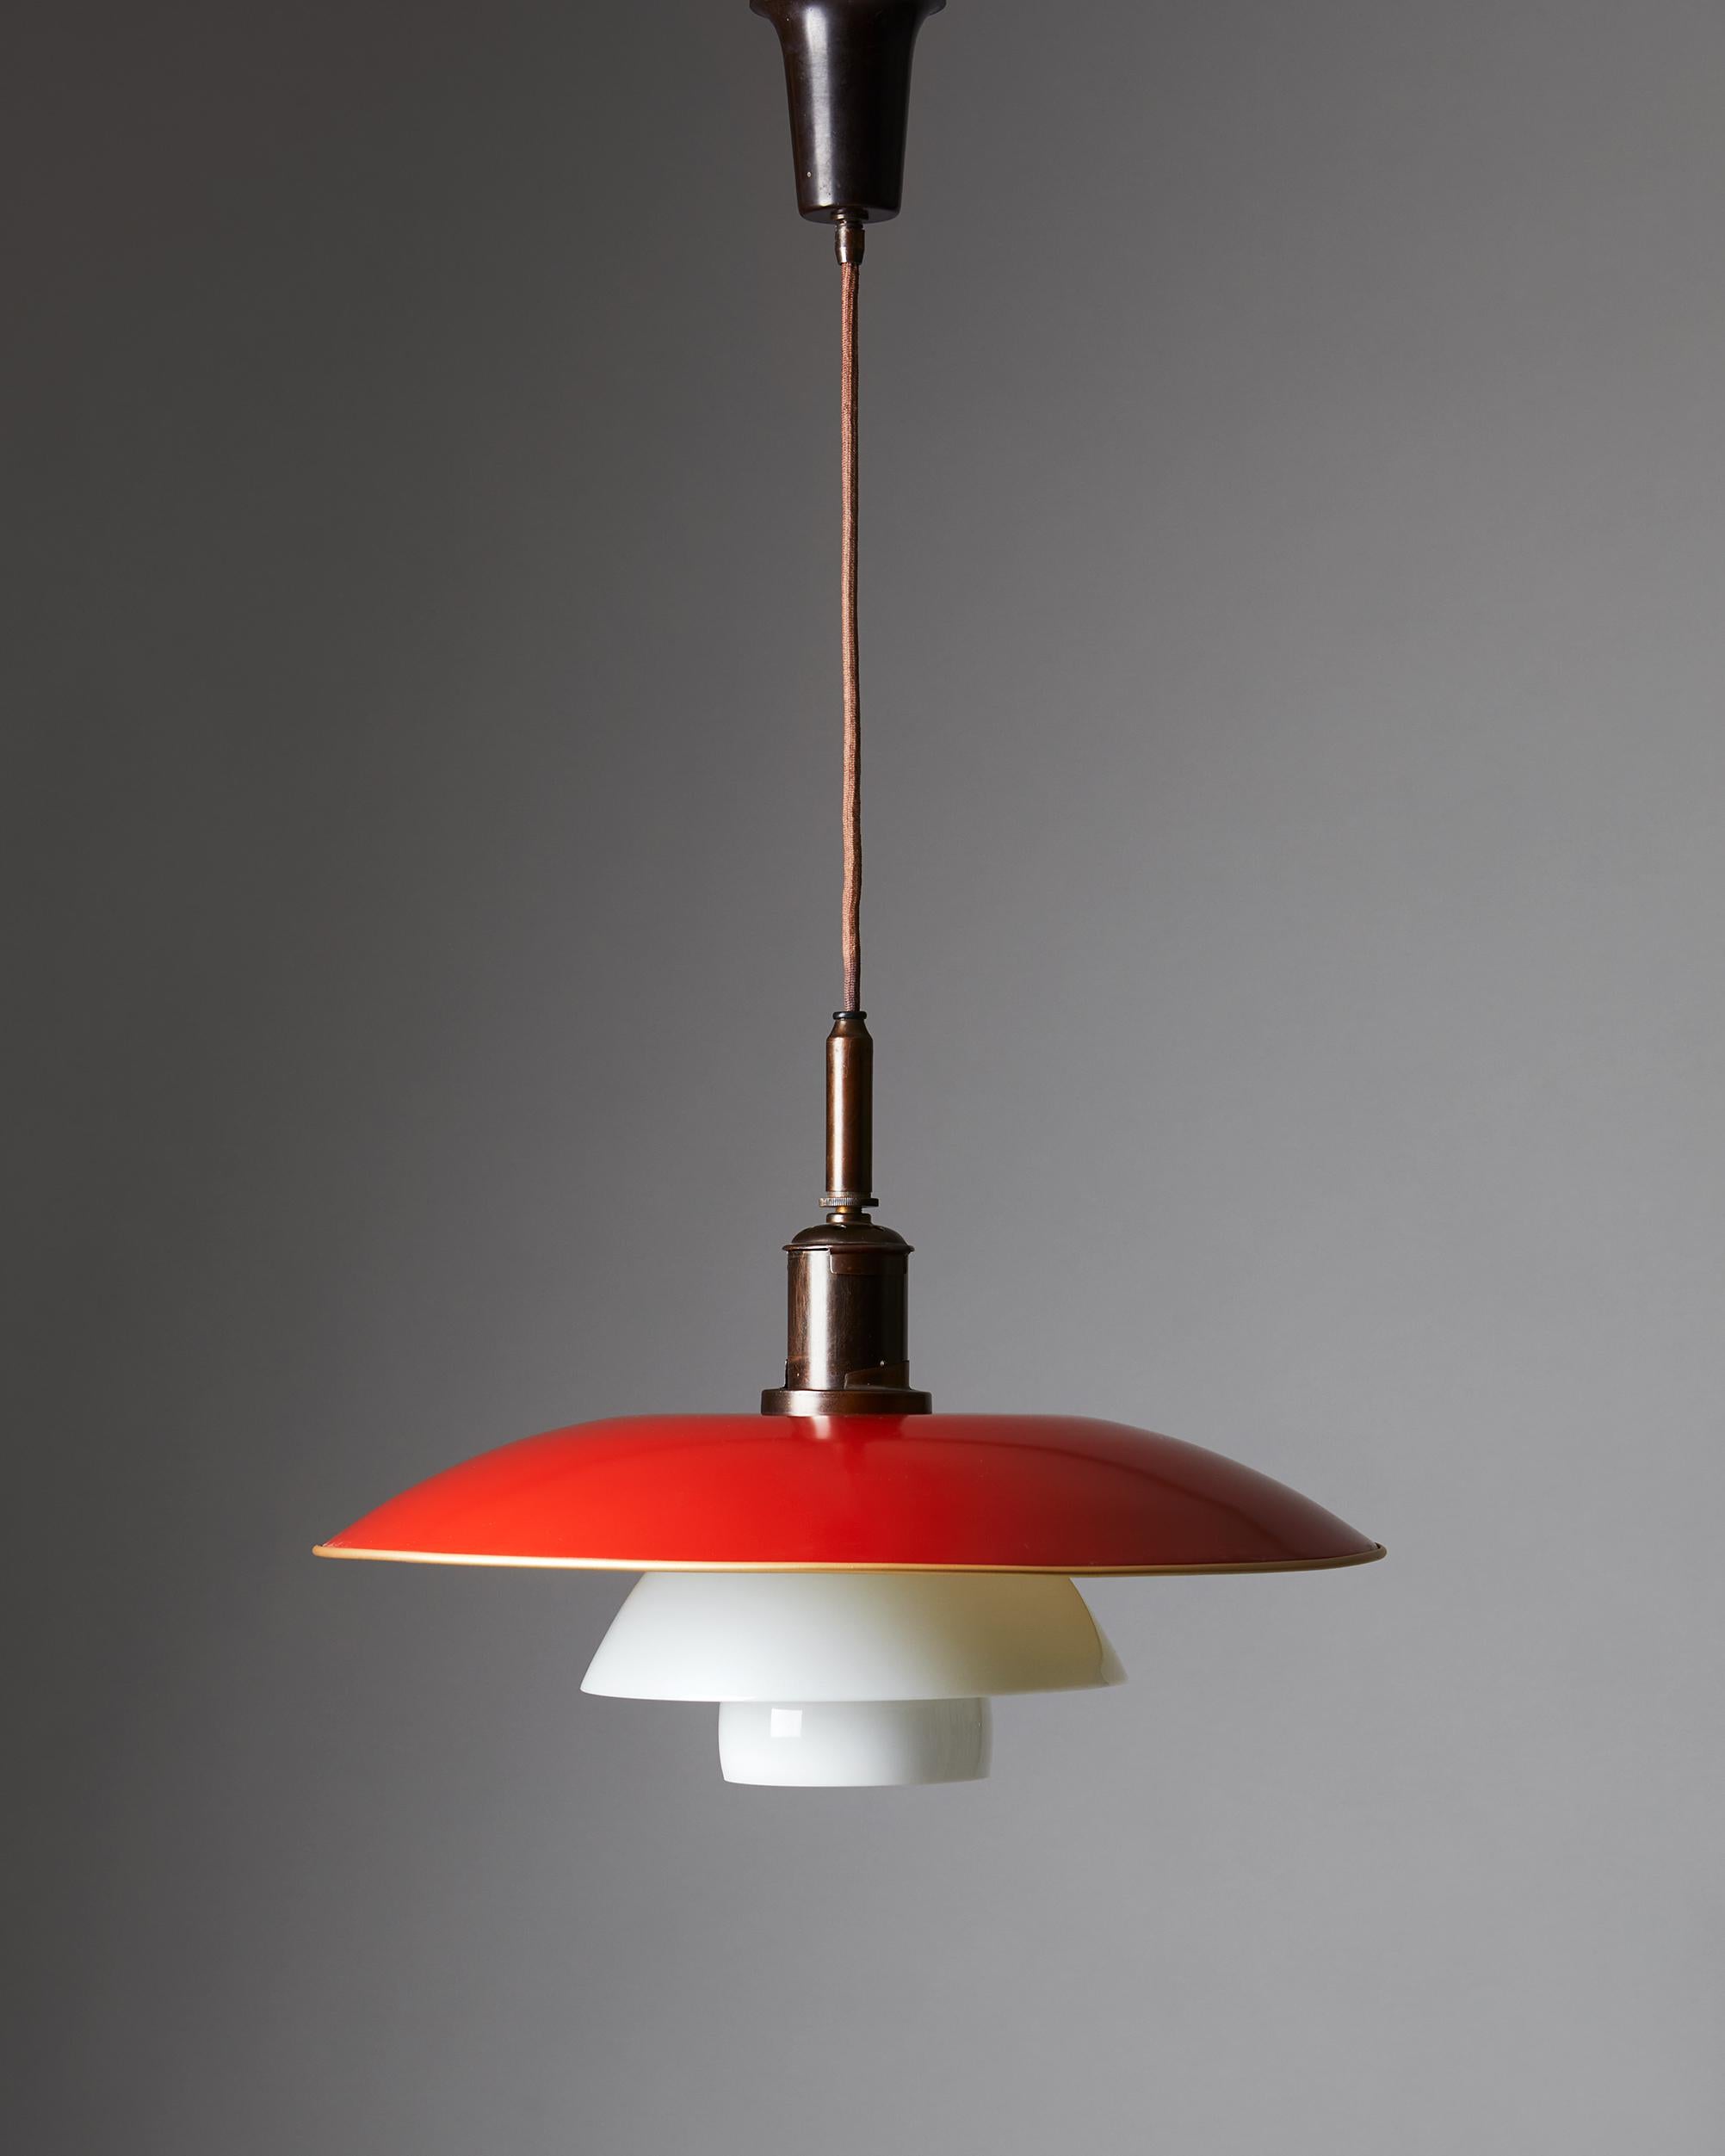 Ceiling lamp PH 5/4 designed by Poul Henningsen for Louis Poulsen, Denmark, 1930s.

  